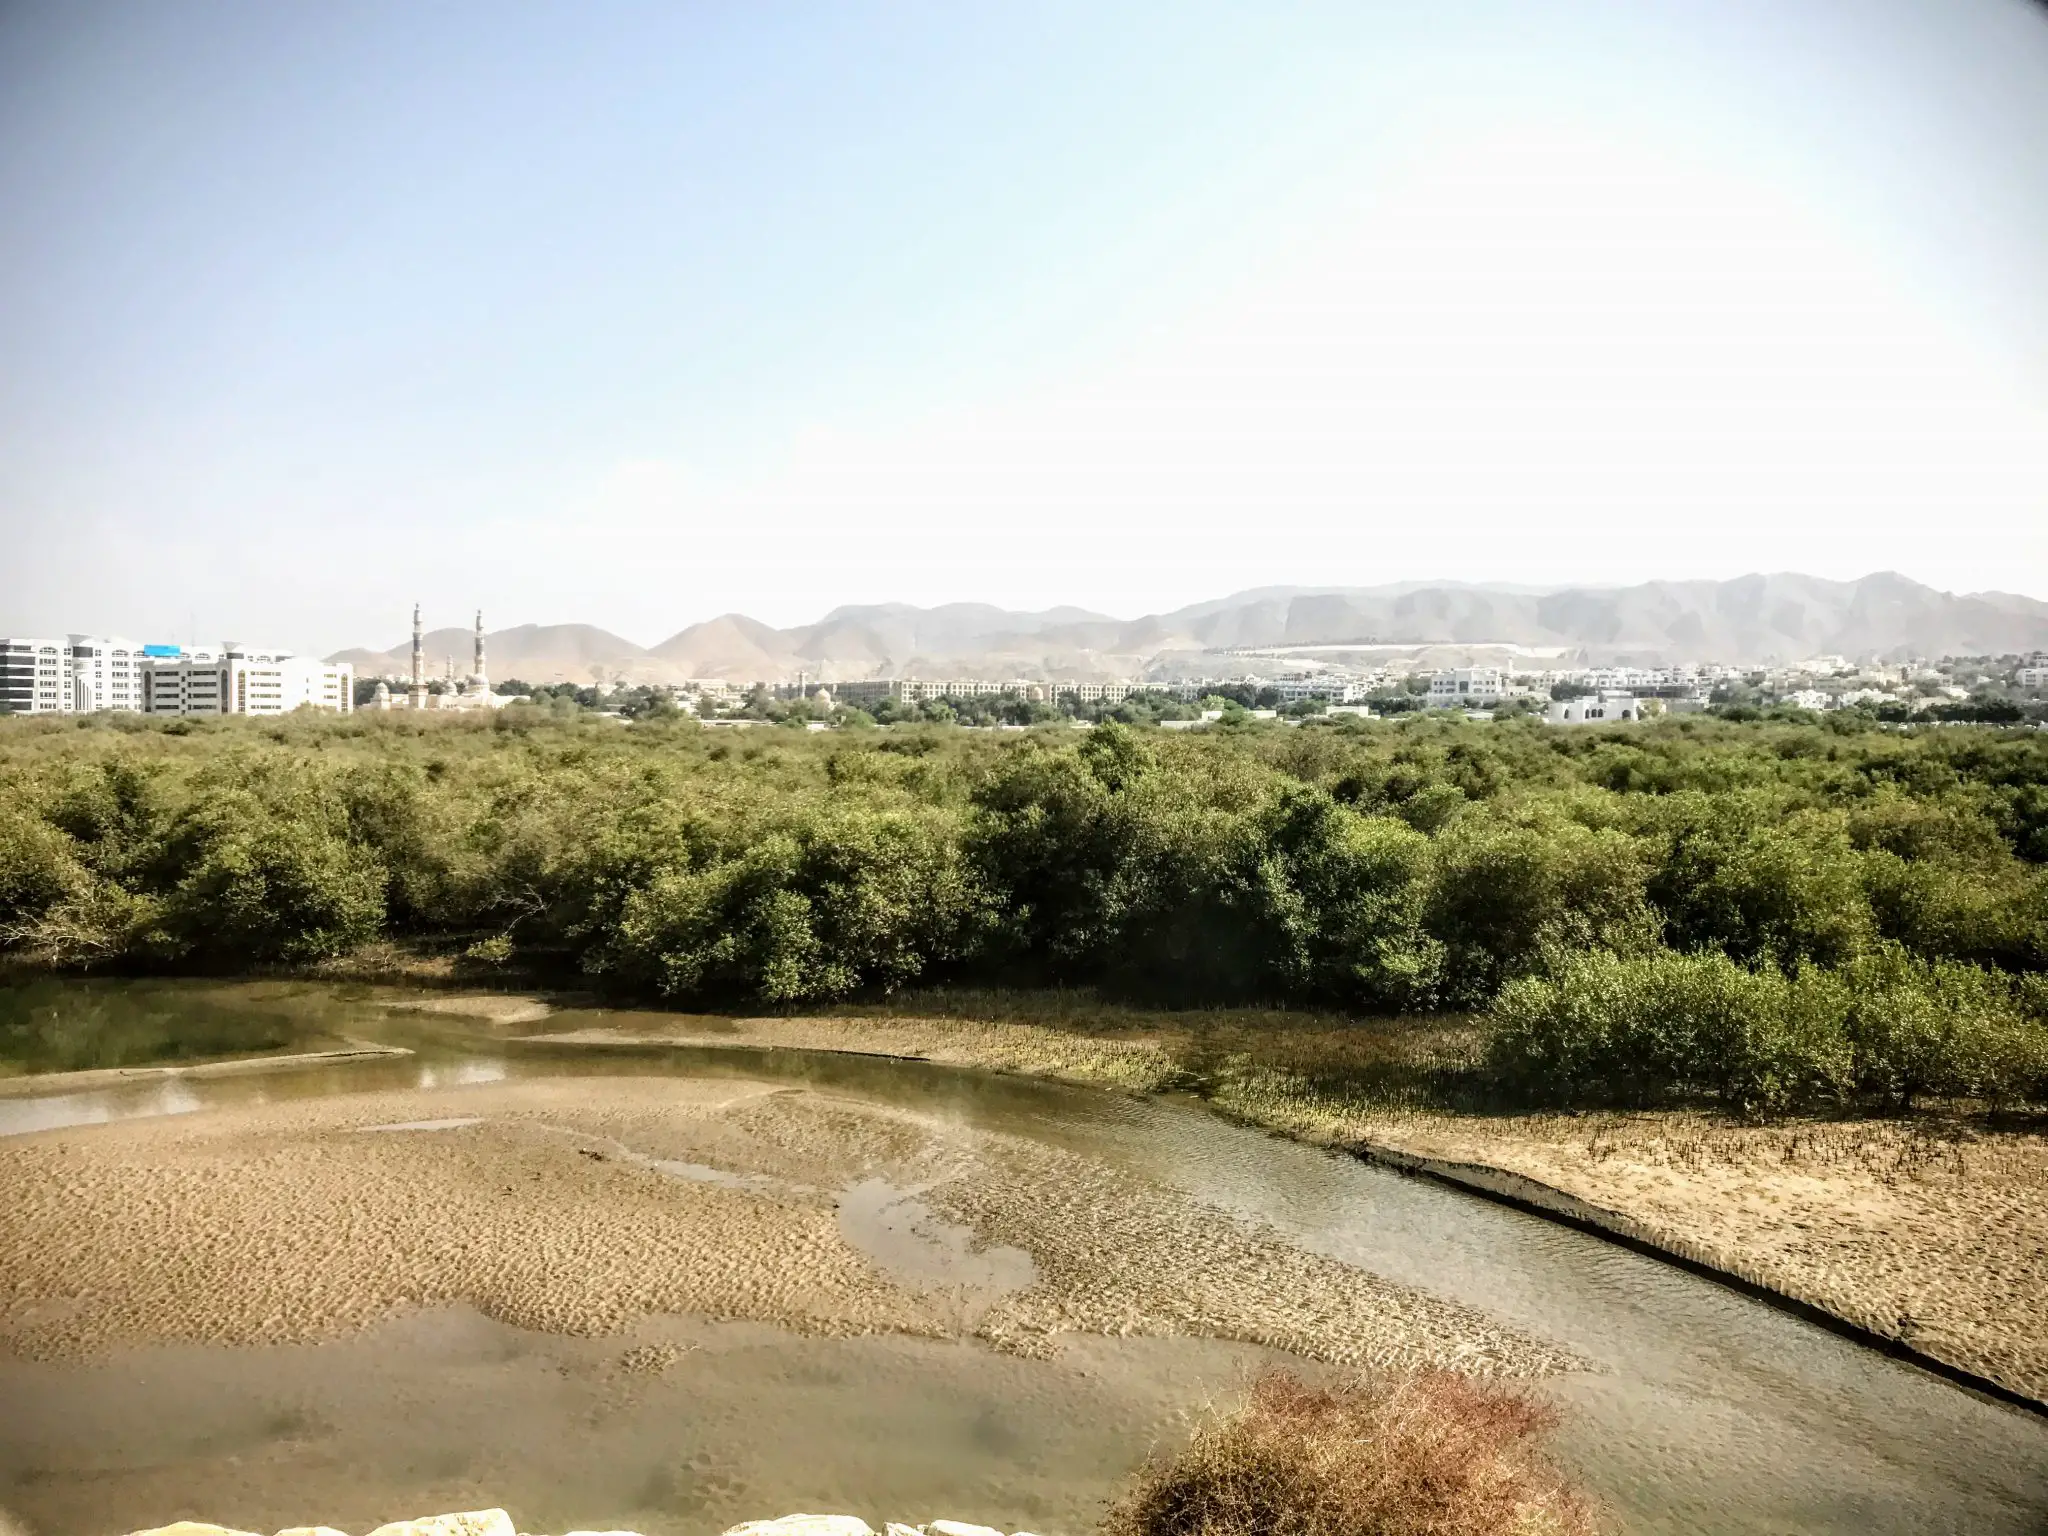 Qurm nature reserve, Muscat, Oman